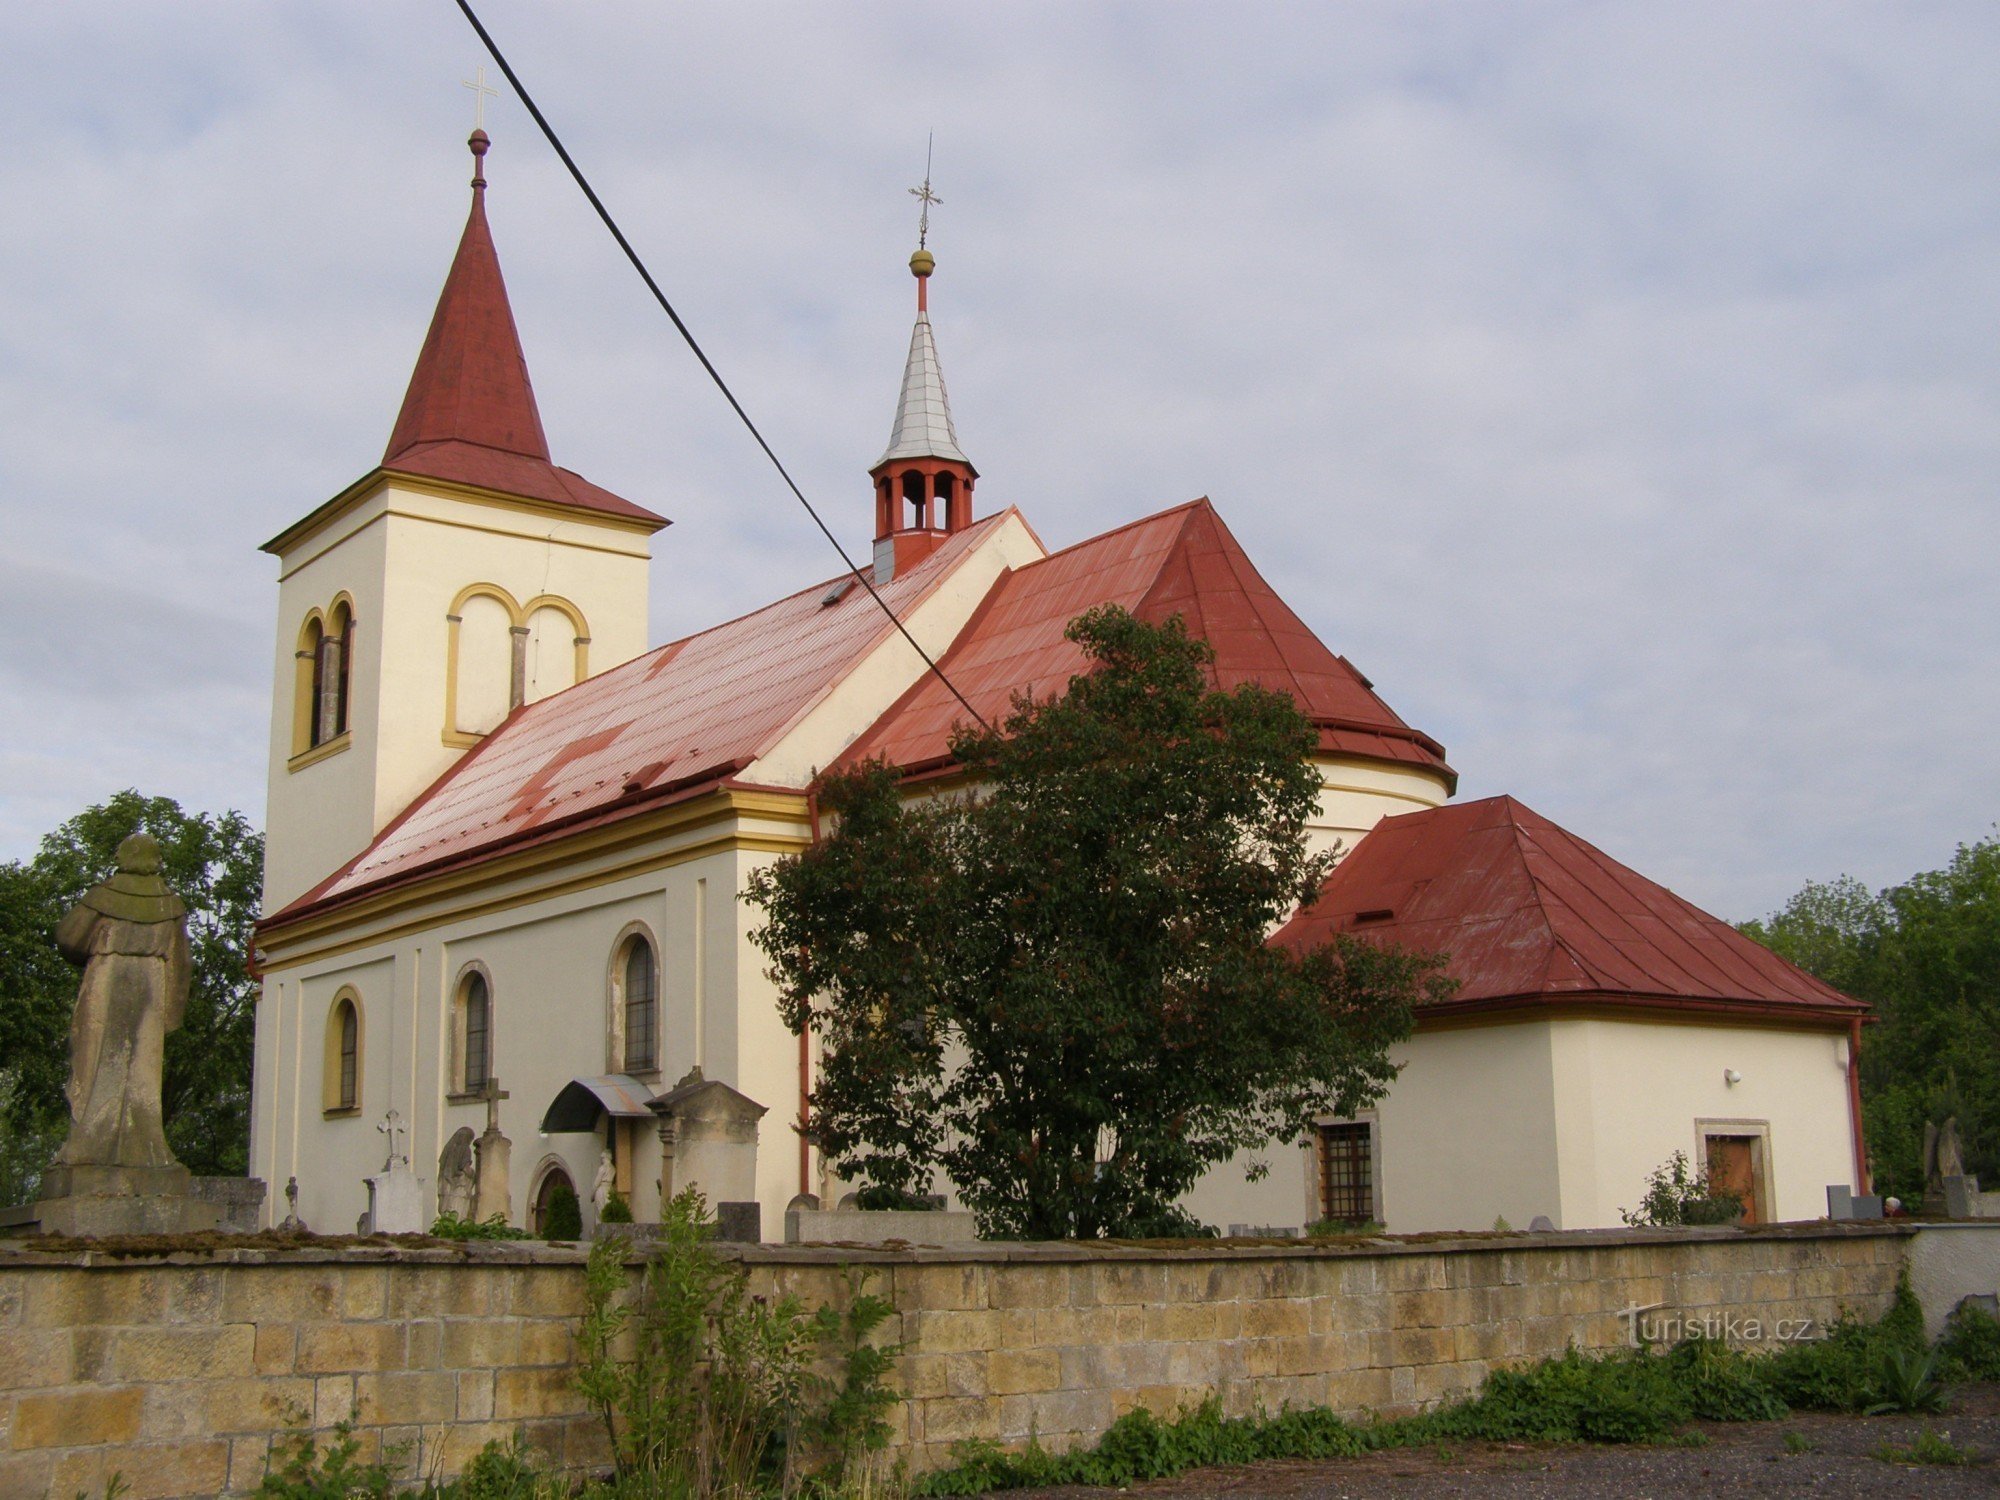 Robousy - Iglesia del Hallazgo de St. Crisis